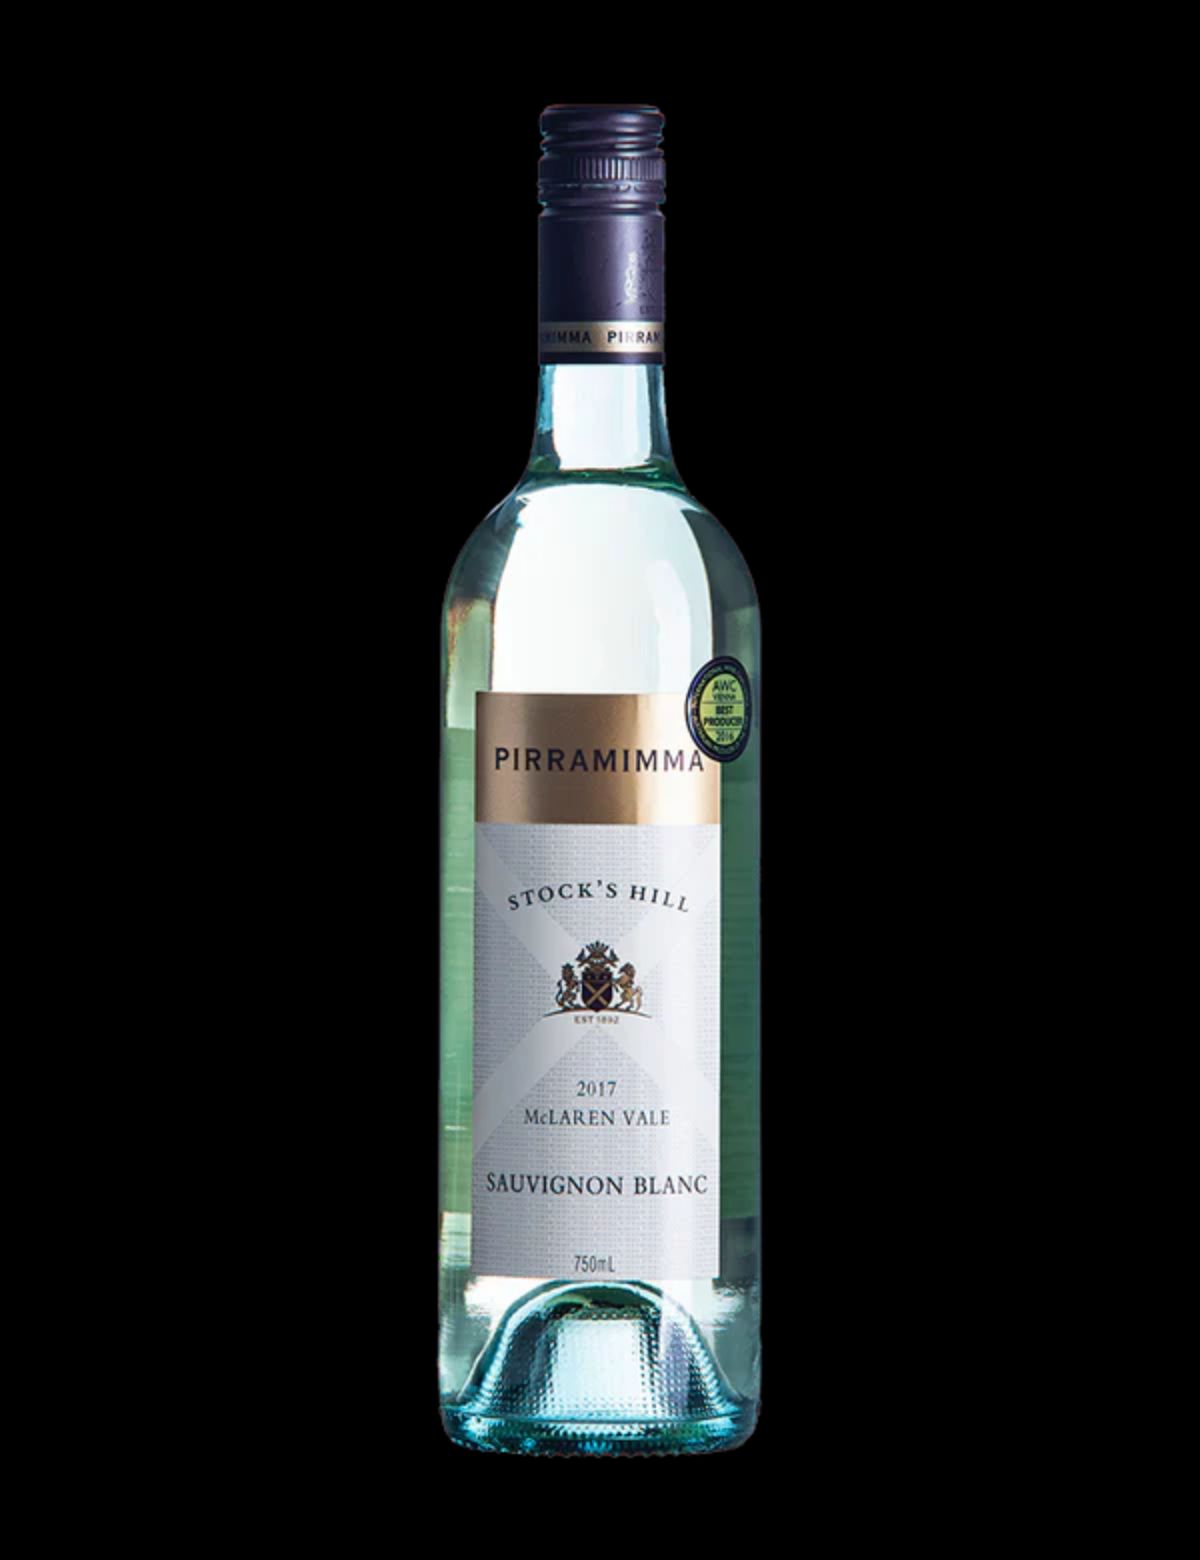 Pirramimma Stock's Hill Sauvignon Blanc